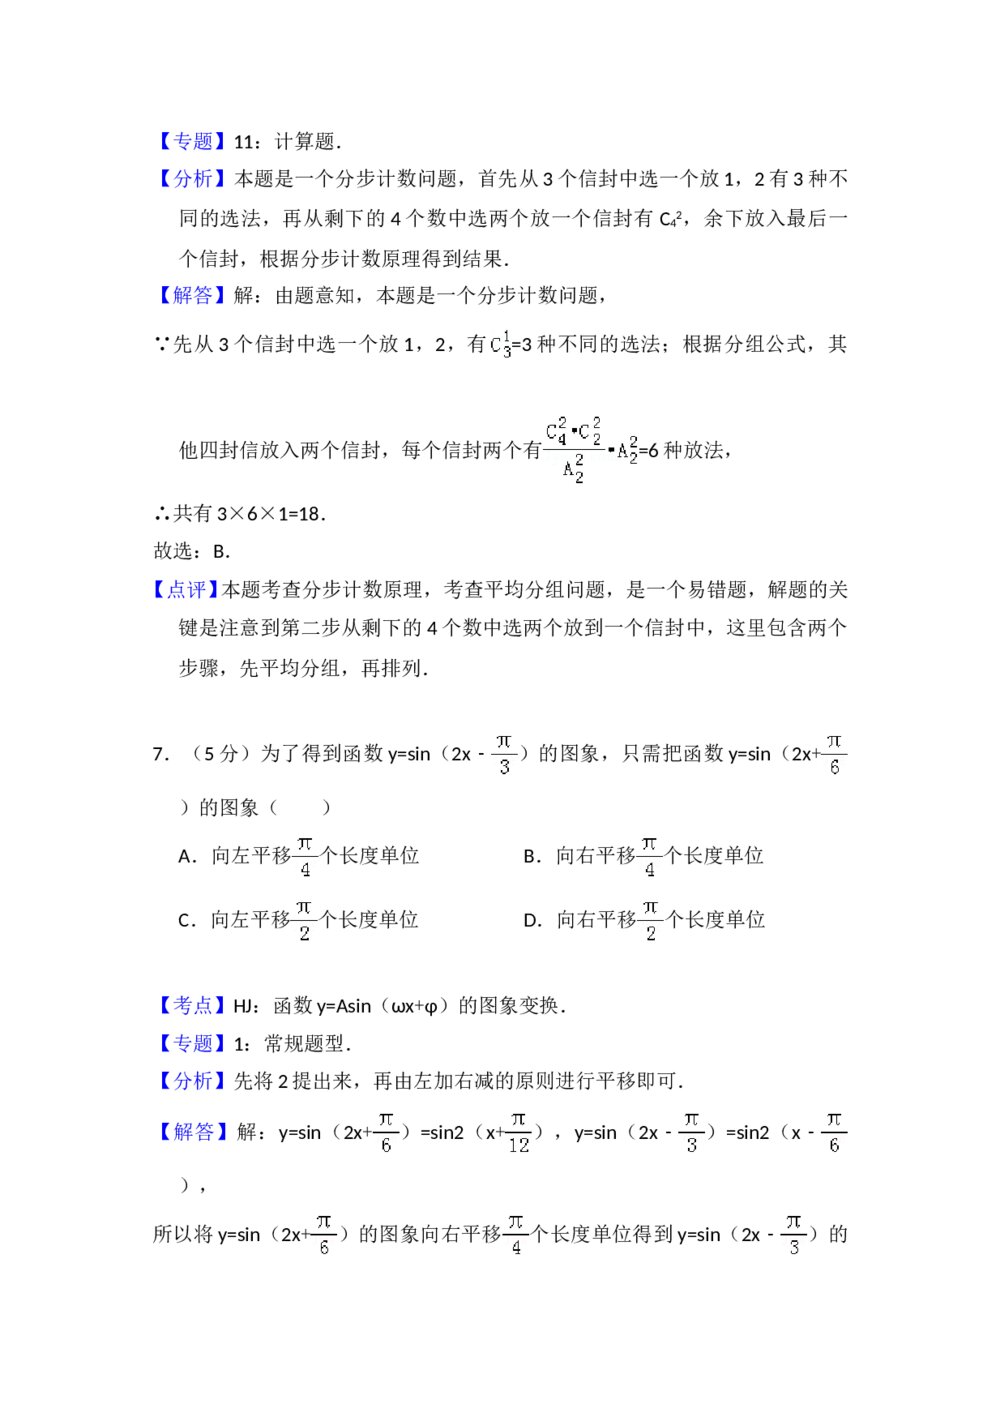 2010年全国统一高考数学试卷(理科)(大纲版ⅱ)+(答案解析)8